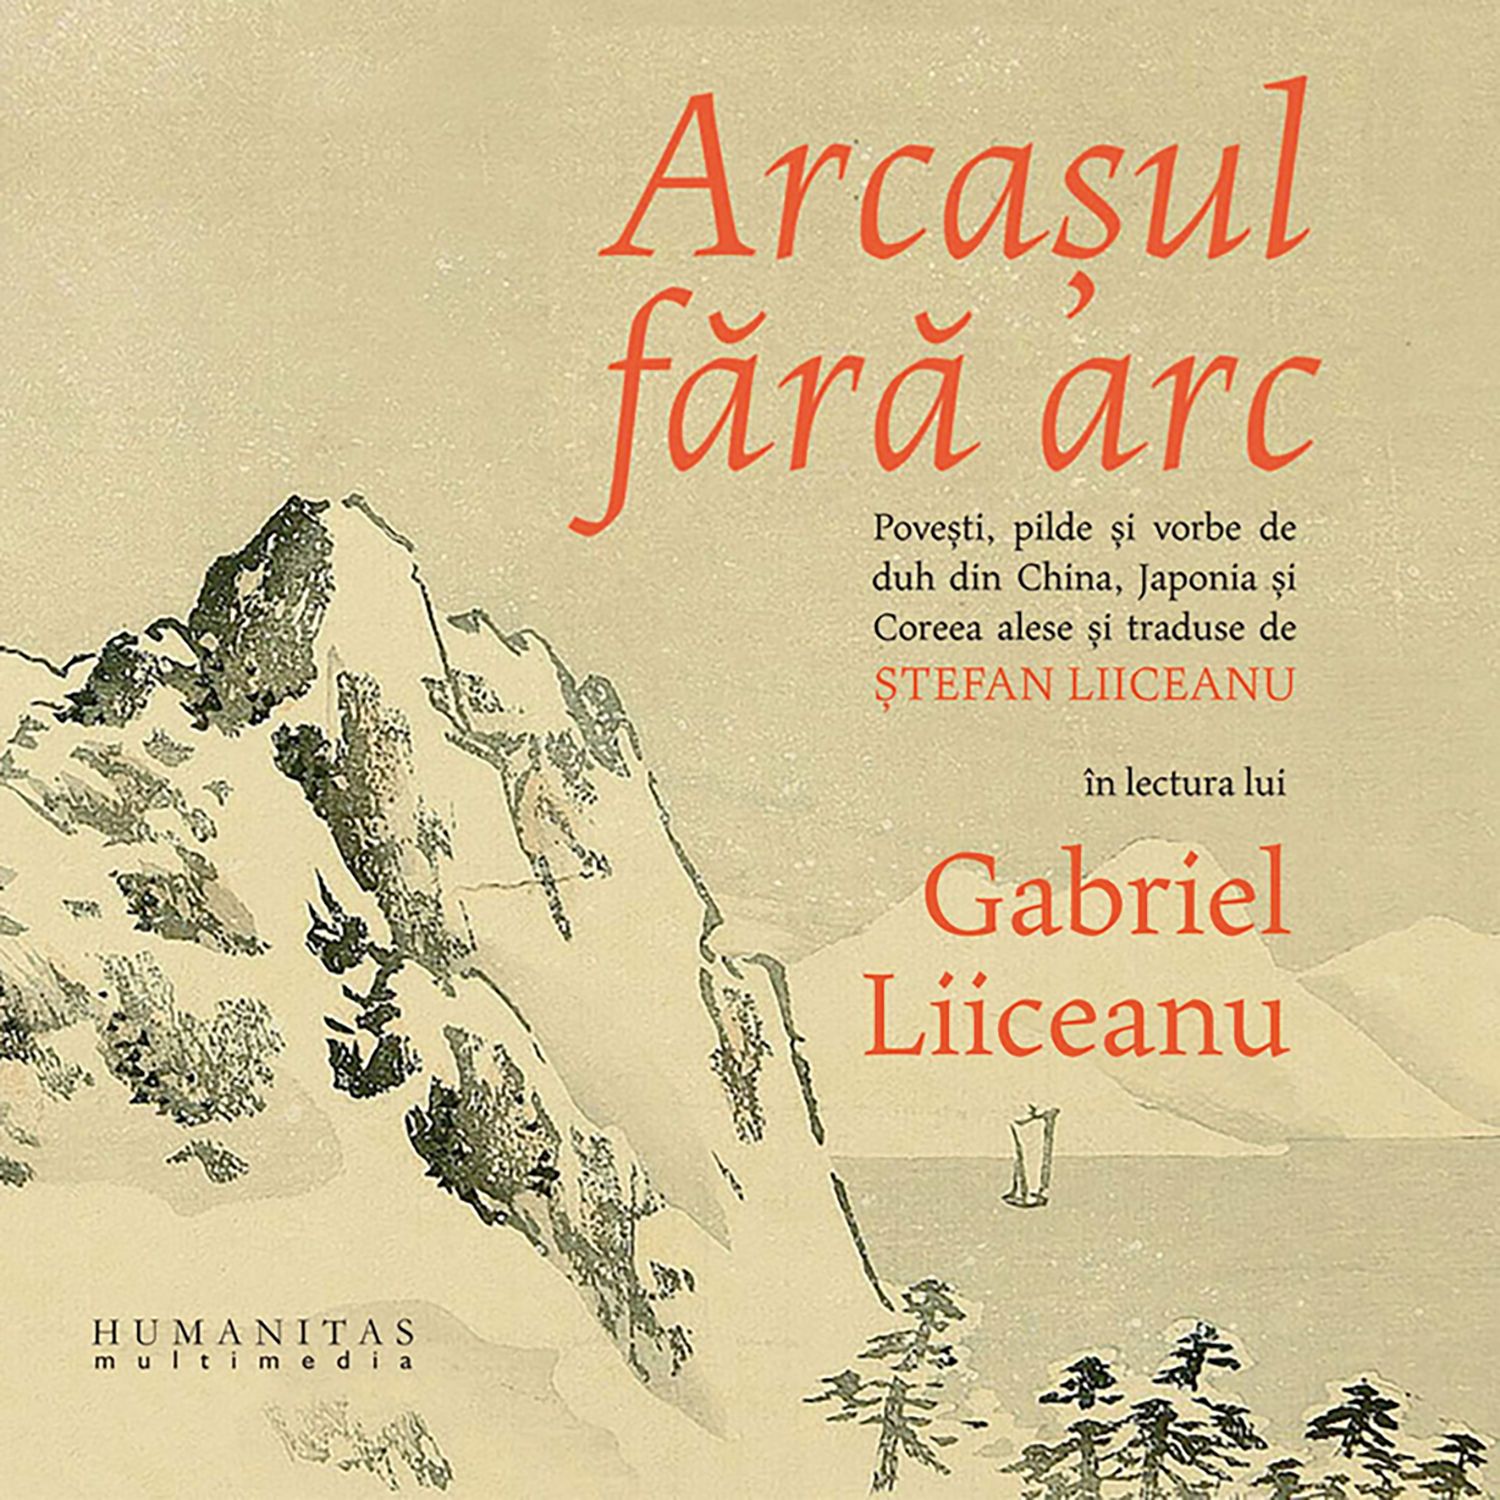 06_Arcasul-fara-arc-audiobook